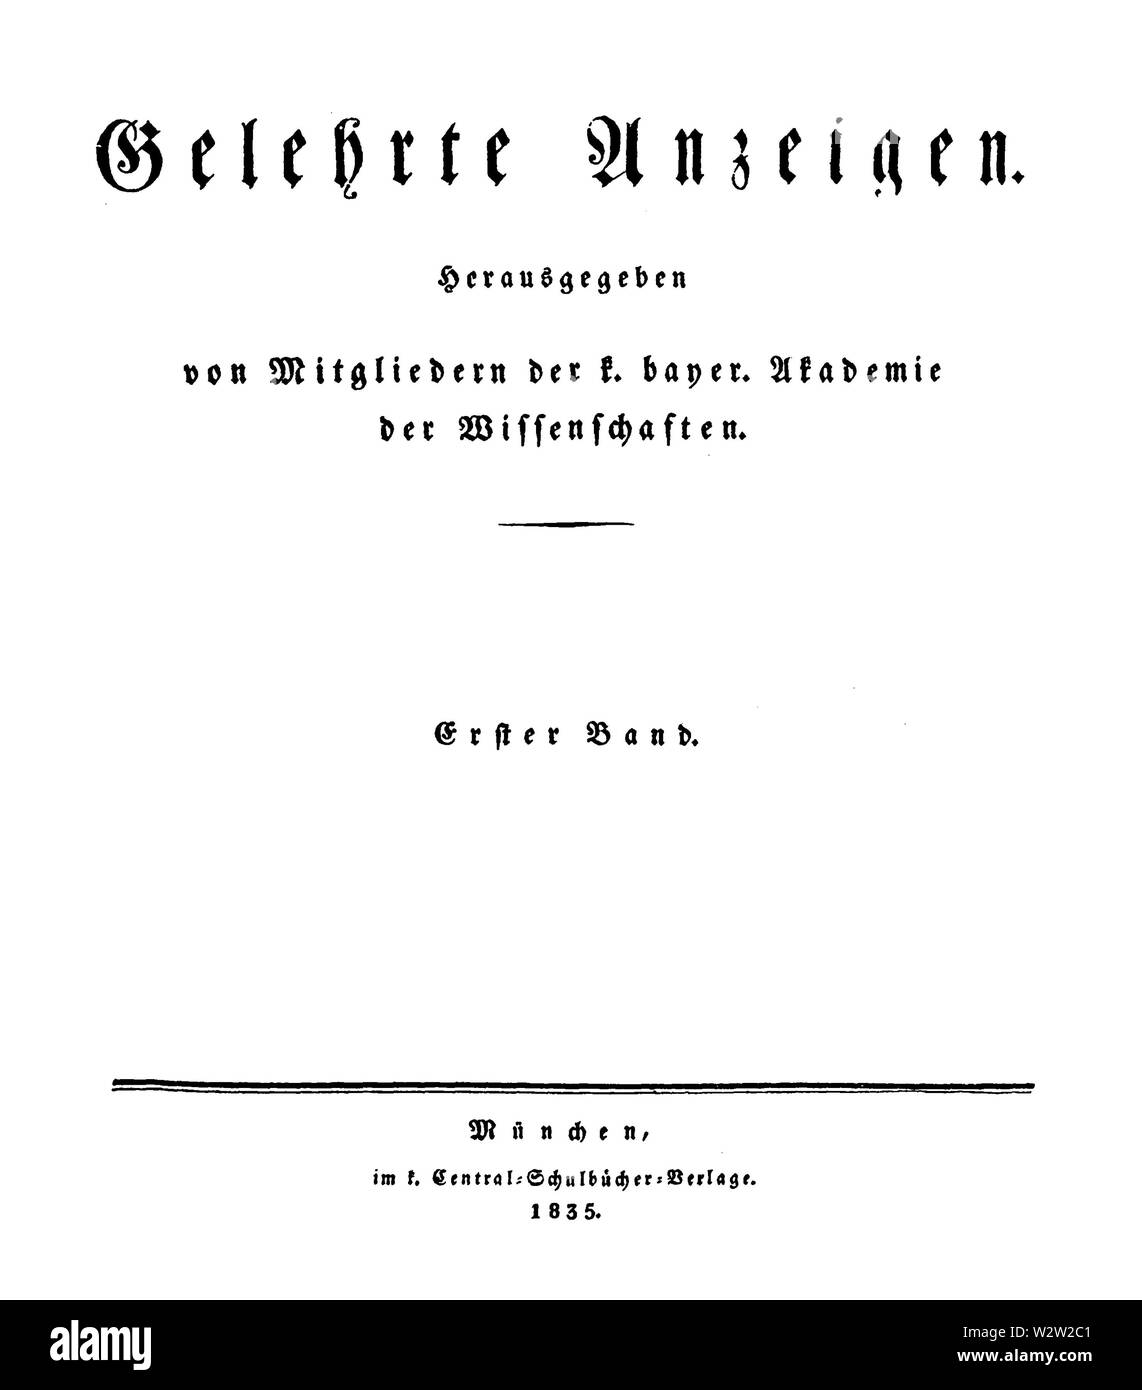 Gelehrte Anzeigen der Königlich Bayerische Akademie der Wissenschaften zu München 1835 Titel Stock Photo